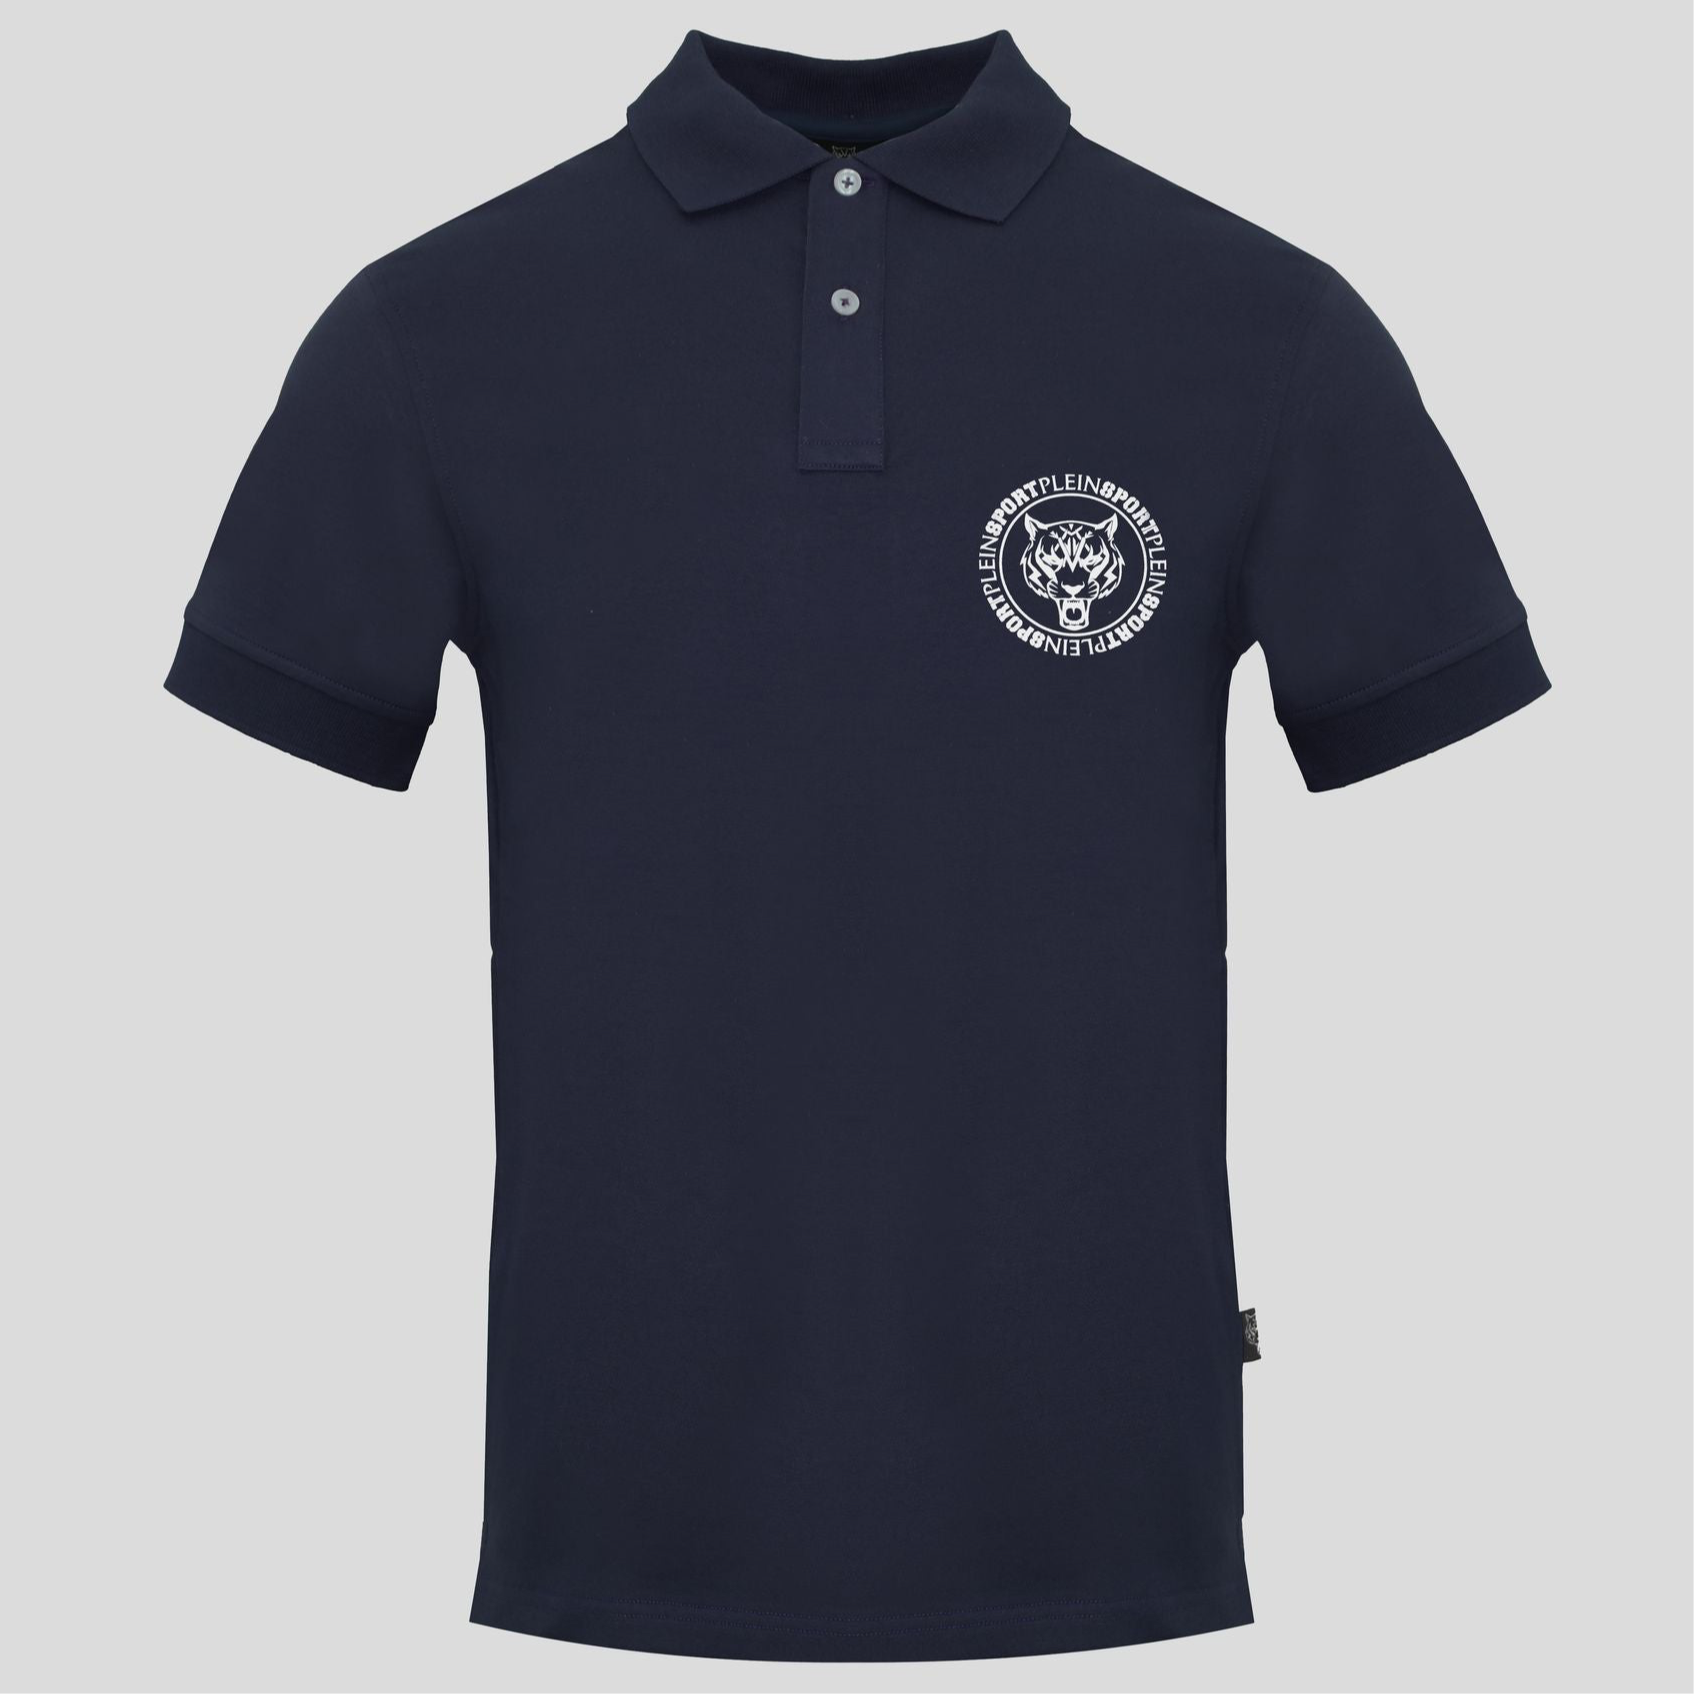 Мъжка поло тениска с яка Plein Sport PIPS50885_NAVY в тъмно синьо